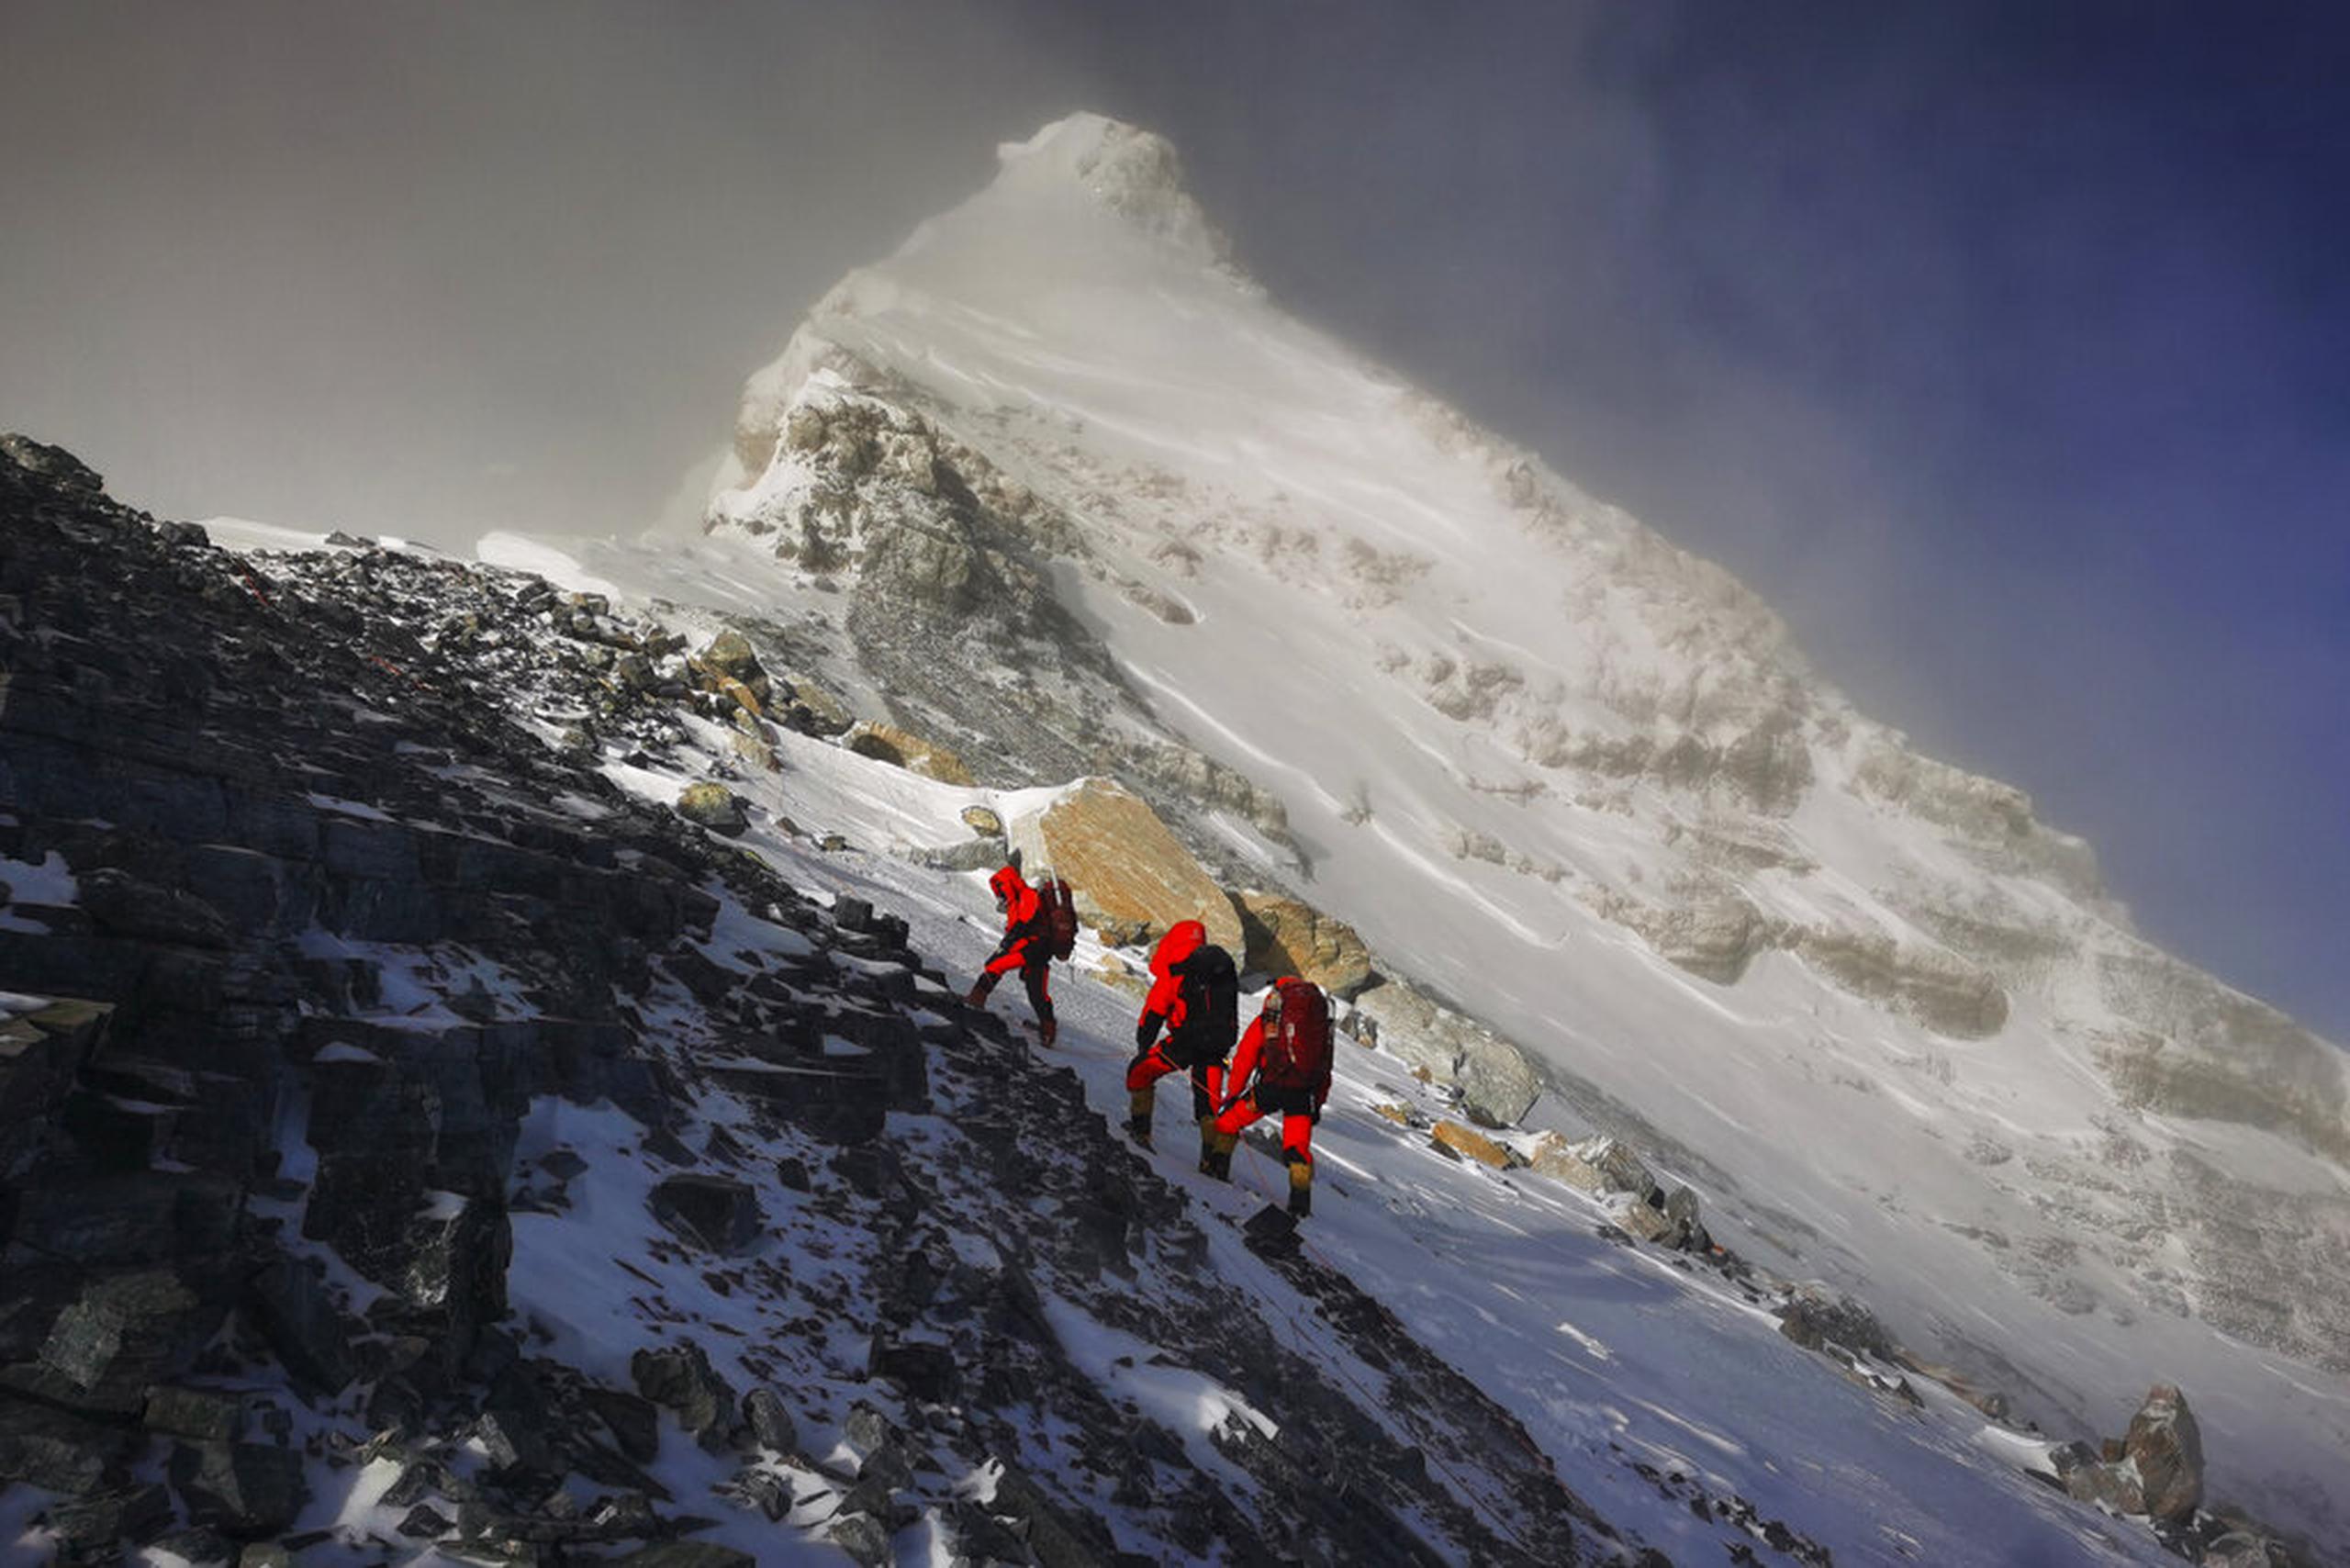 La nueva altura de la montaña se acordó después de prospectores nepalíes escalaran el pico en 2019 y un equipo chino hiciera lo mismo en 2020.